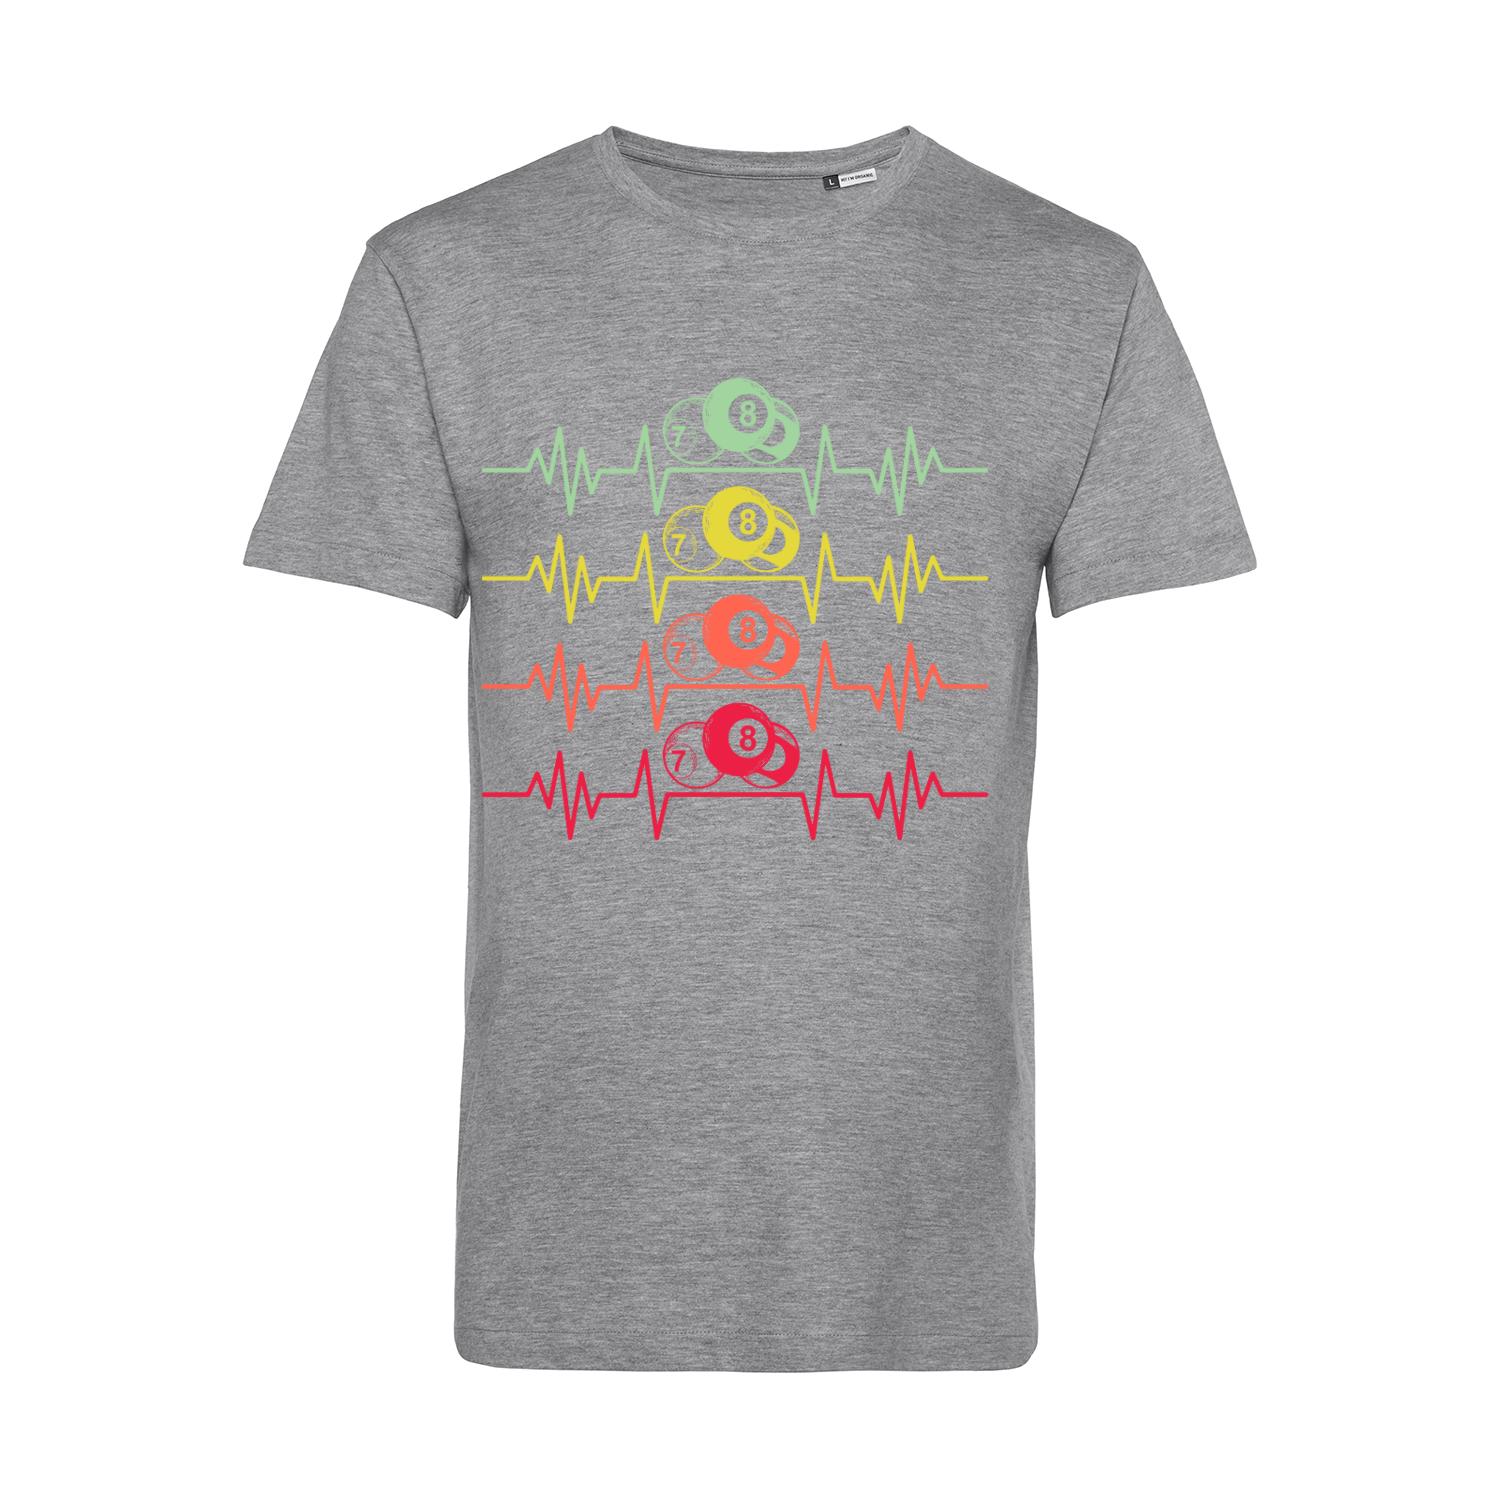 Nachhaltiges T-Shirt Herren Billard farbige Herzstromkurve